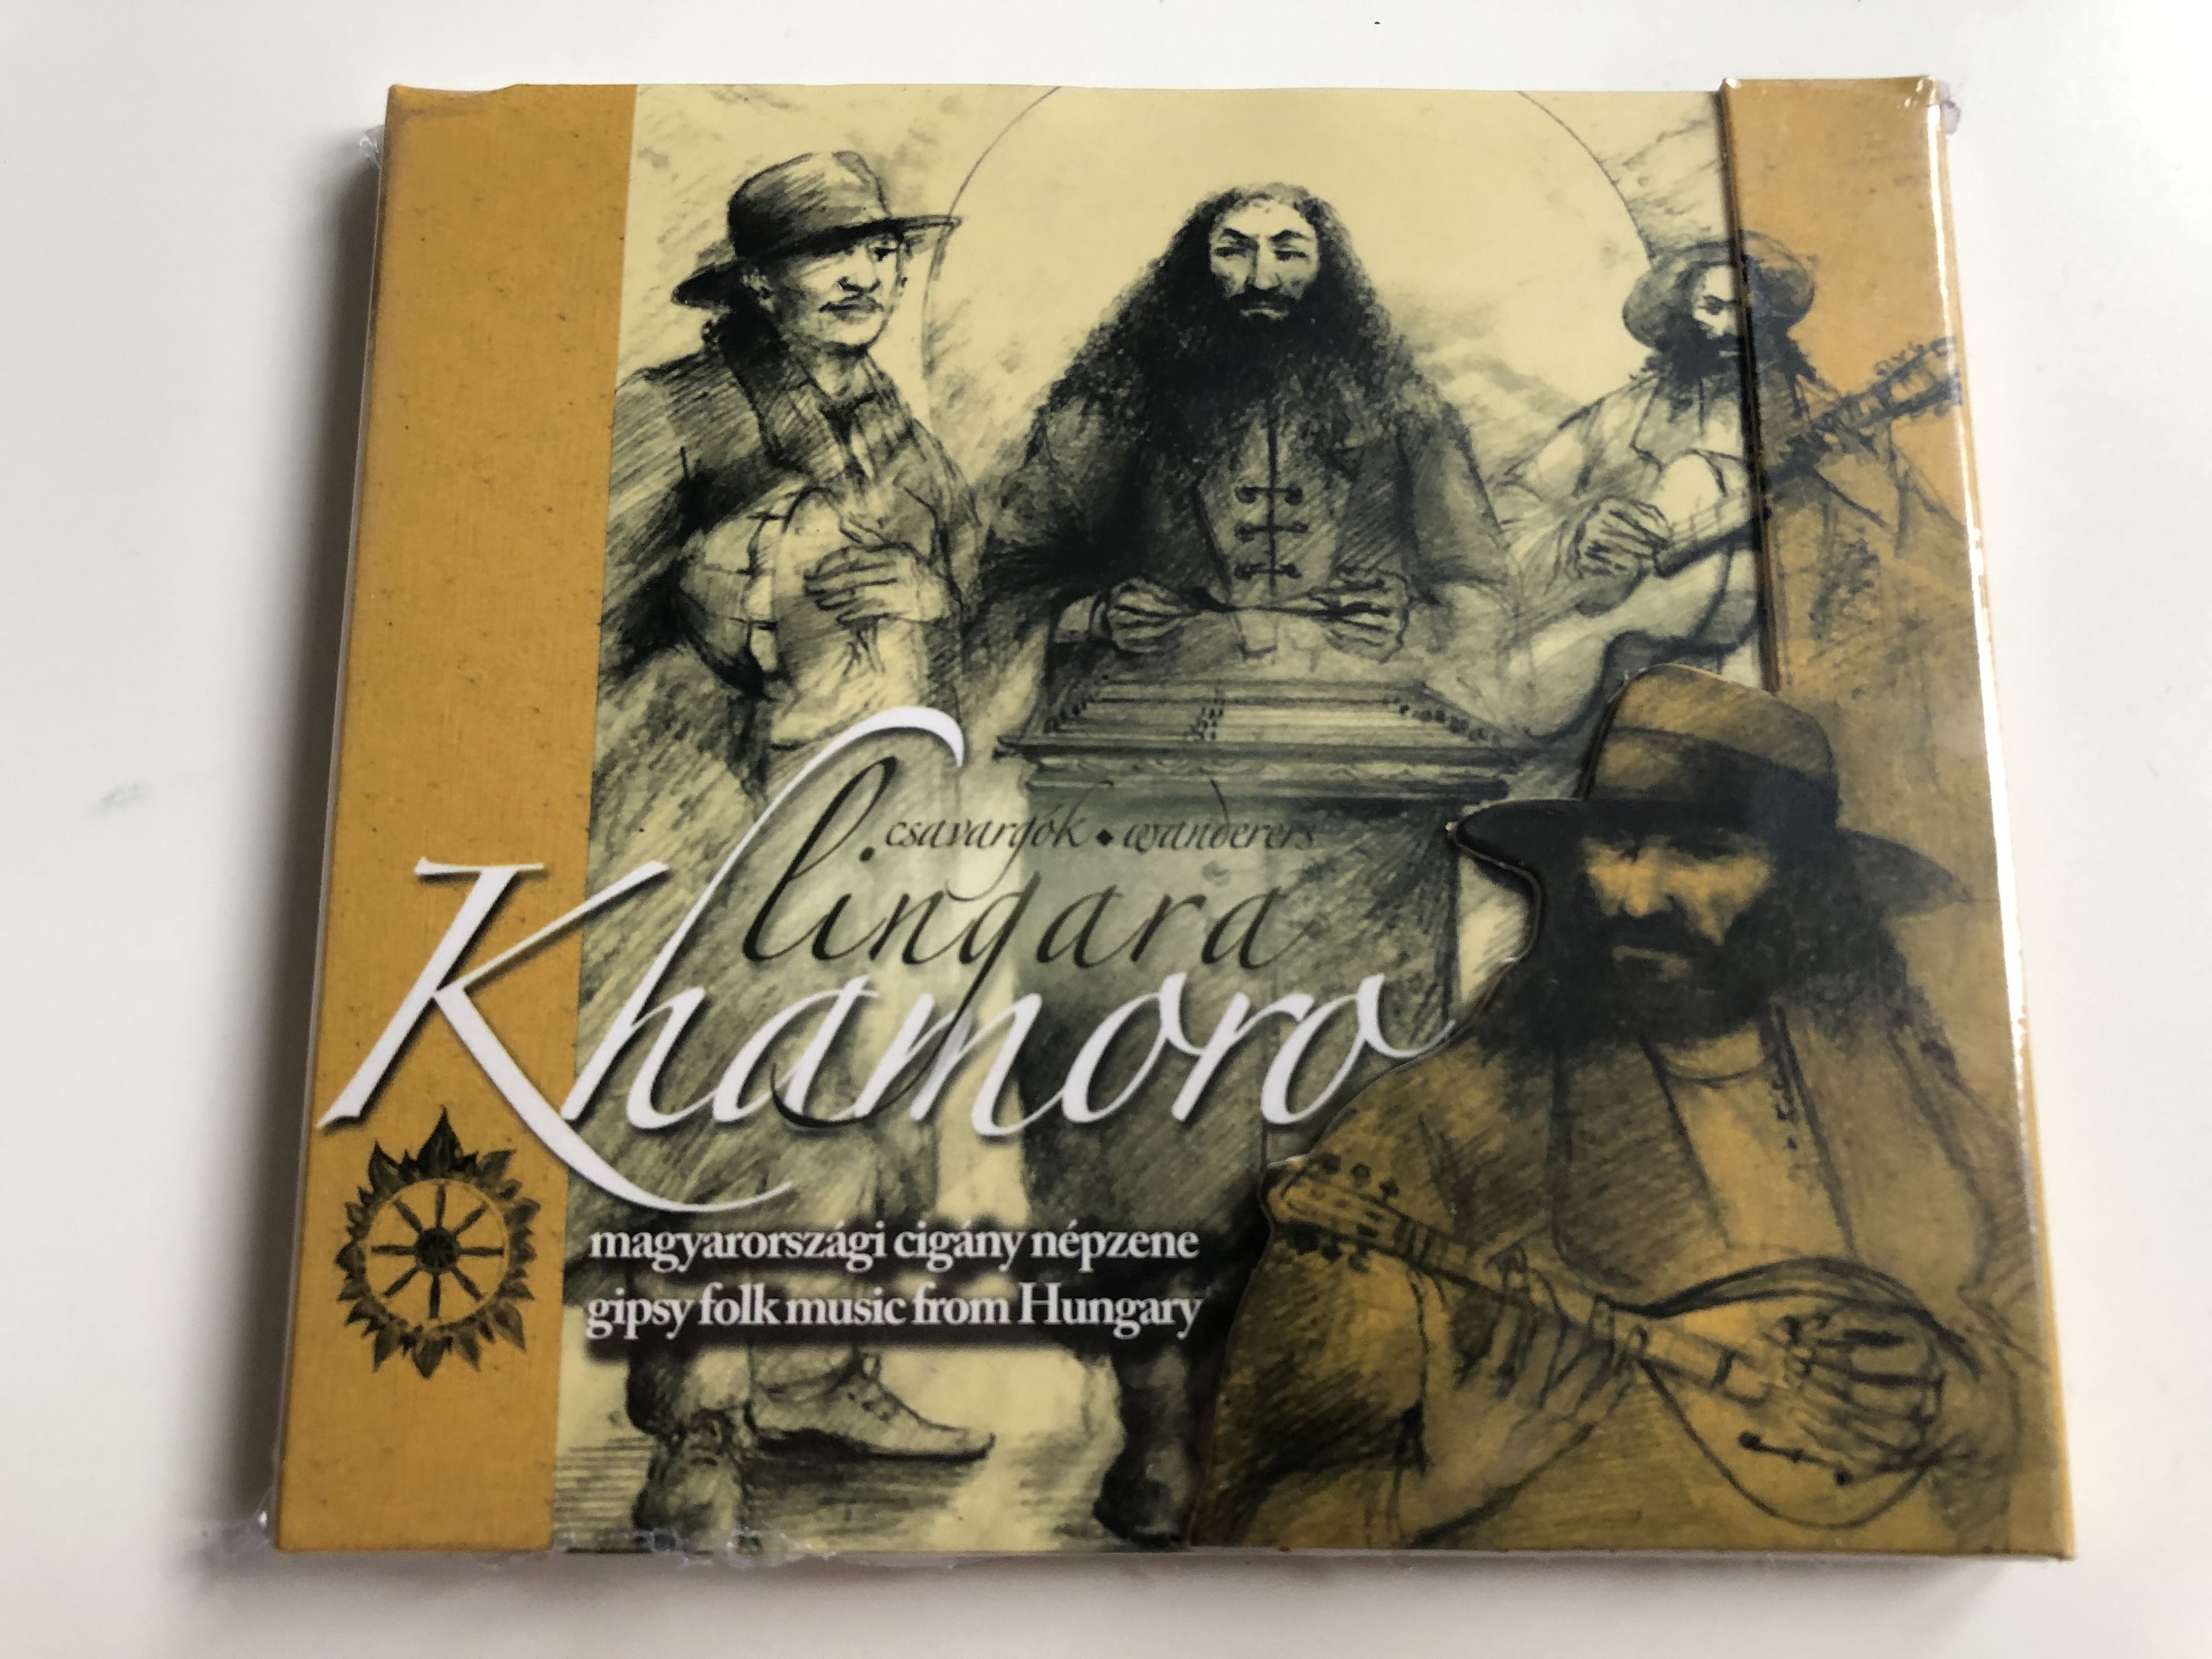 lingara-khamoro-magyarorszagi-cigany-nepzene-gipsy-folk-music-from-hungary-fon-records-audio-cd-2007-fa-236-2-1-.jpg